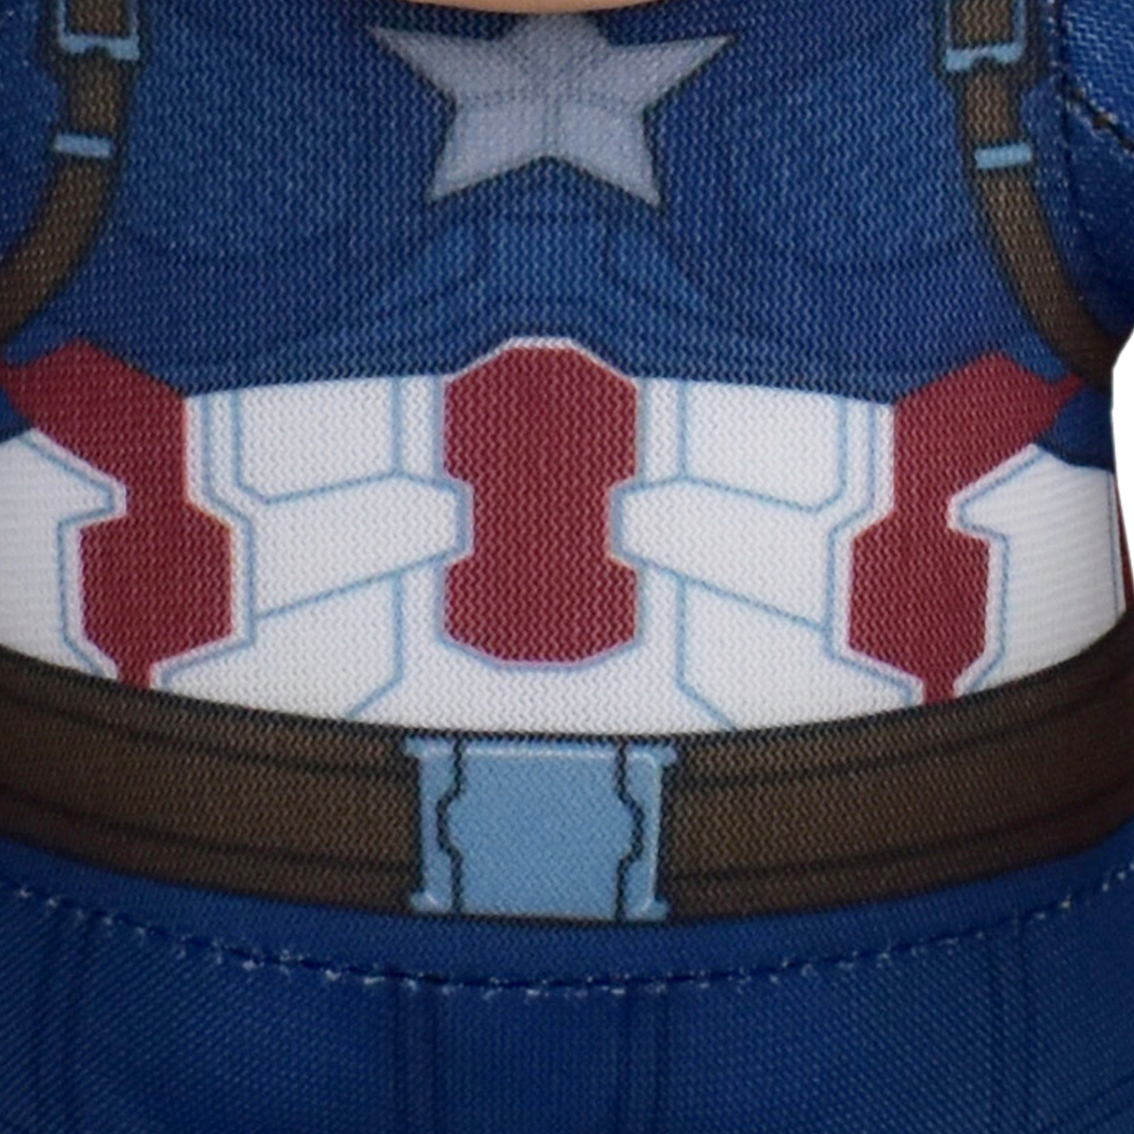 Bleacher Creatures Marvel Captain America 10 in. Plush Figure - Image 5 of 7